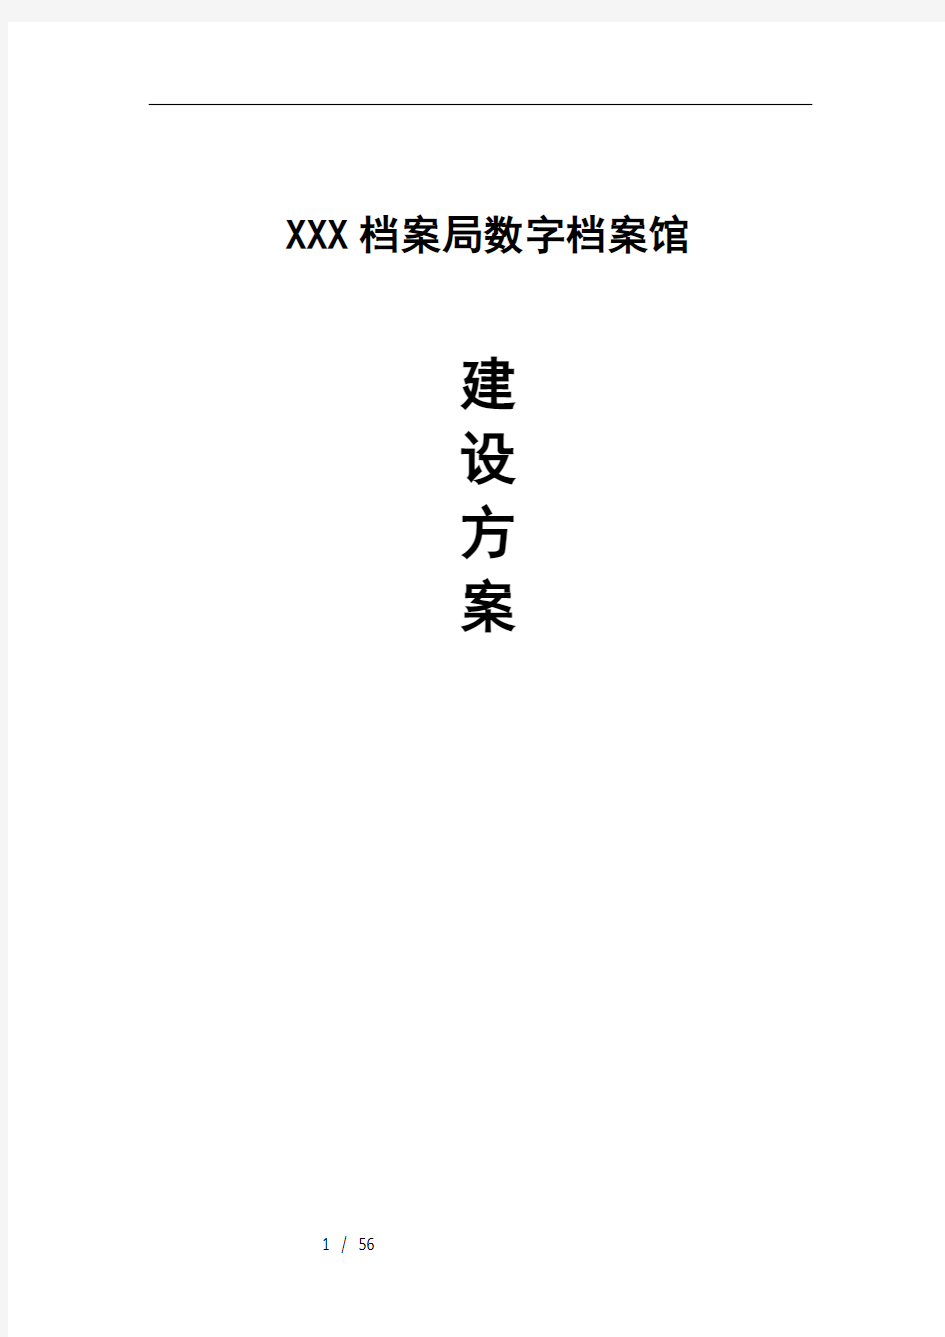 XXX档案局数字档案馆建设方案